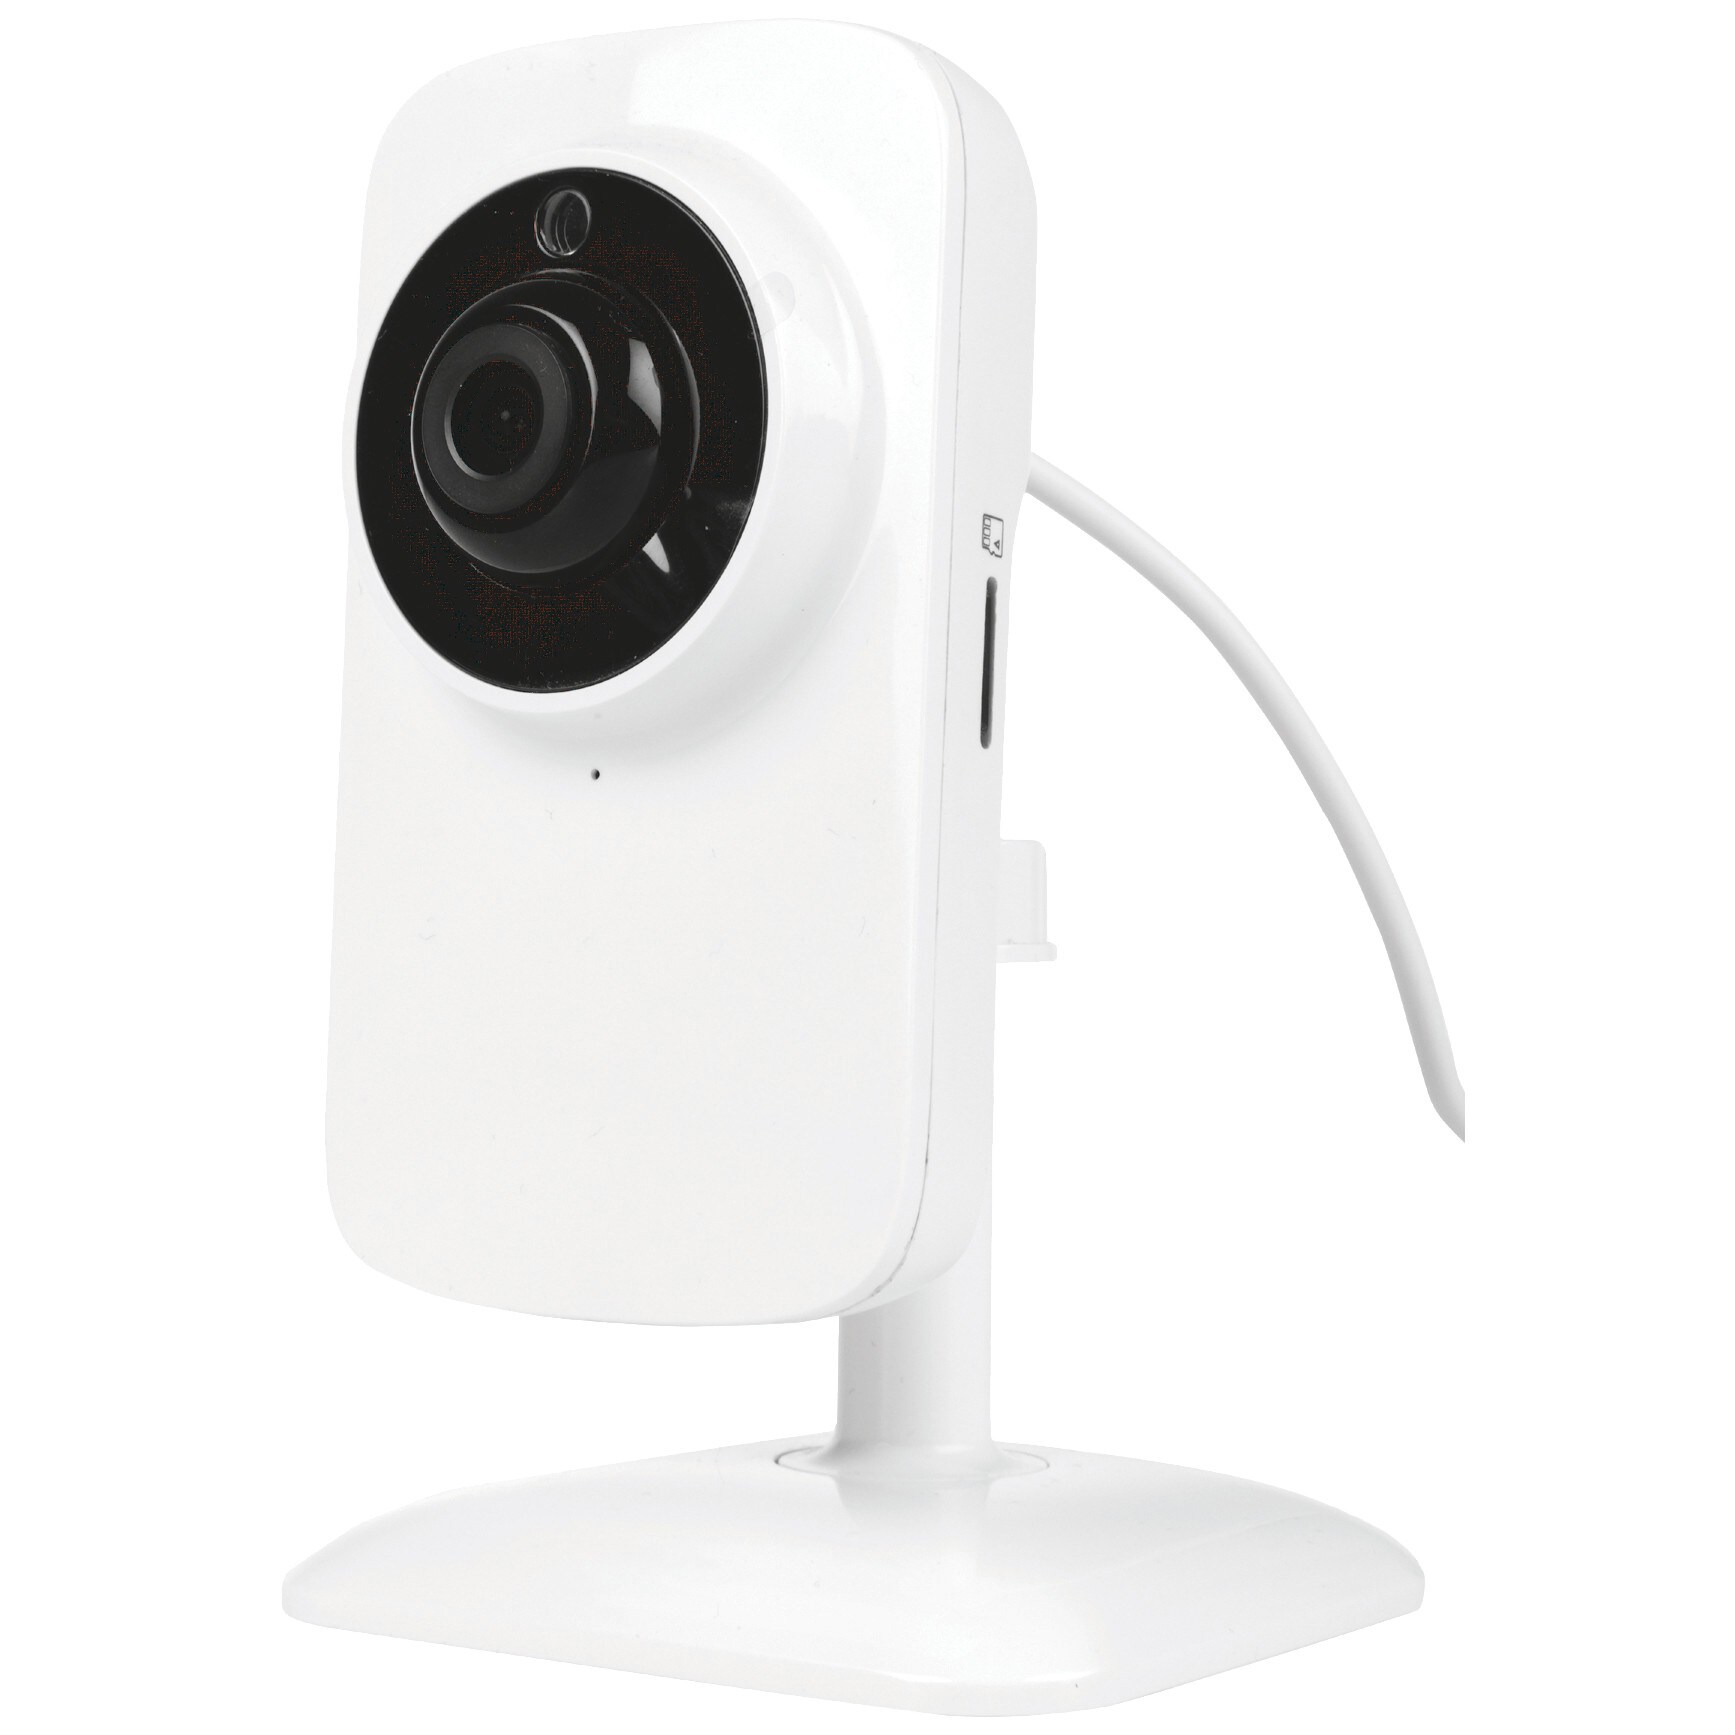 Trust Wi-Fi IP kamera med night-vision - Alle smarte produkter ...